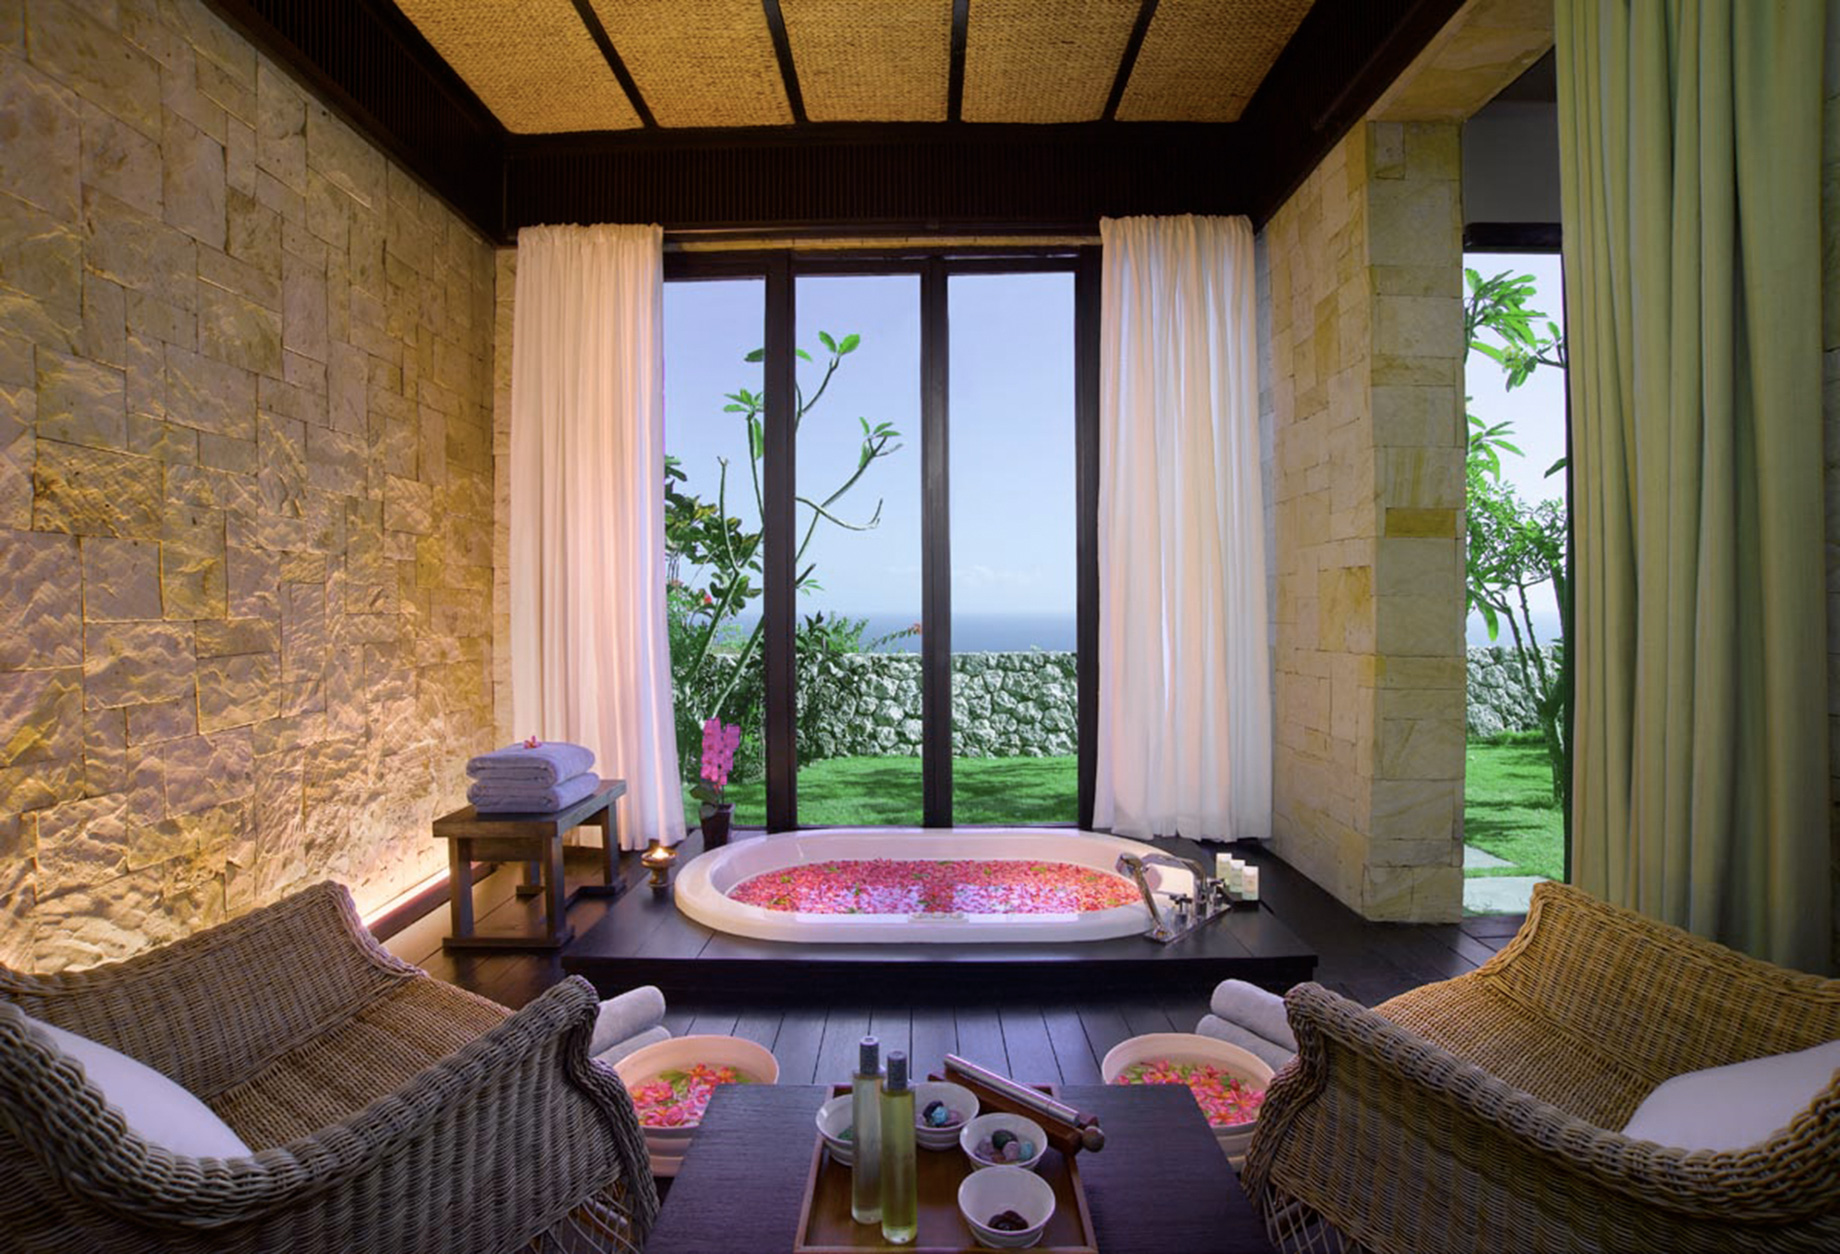 Bvlgari Resort Bali – Uluwatu, Bali, Indonesia – The Bvlgari Spa Ocean View Jacuzzi Room Sunset